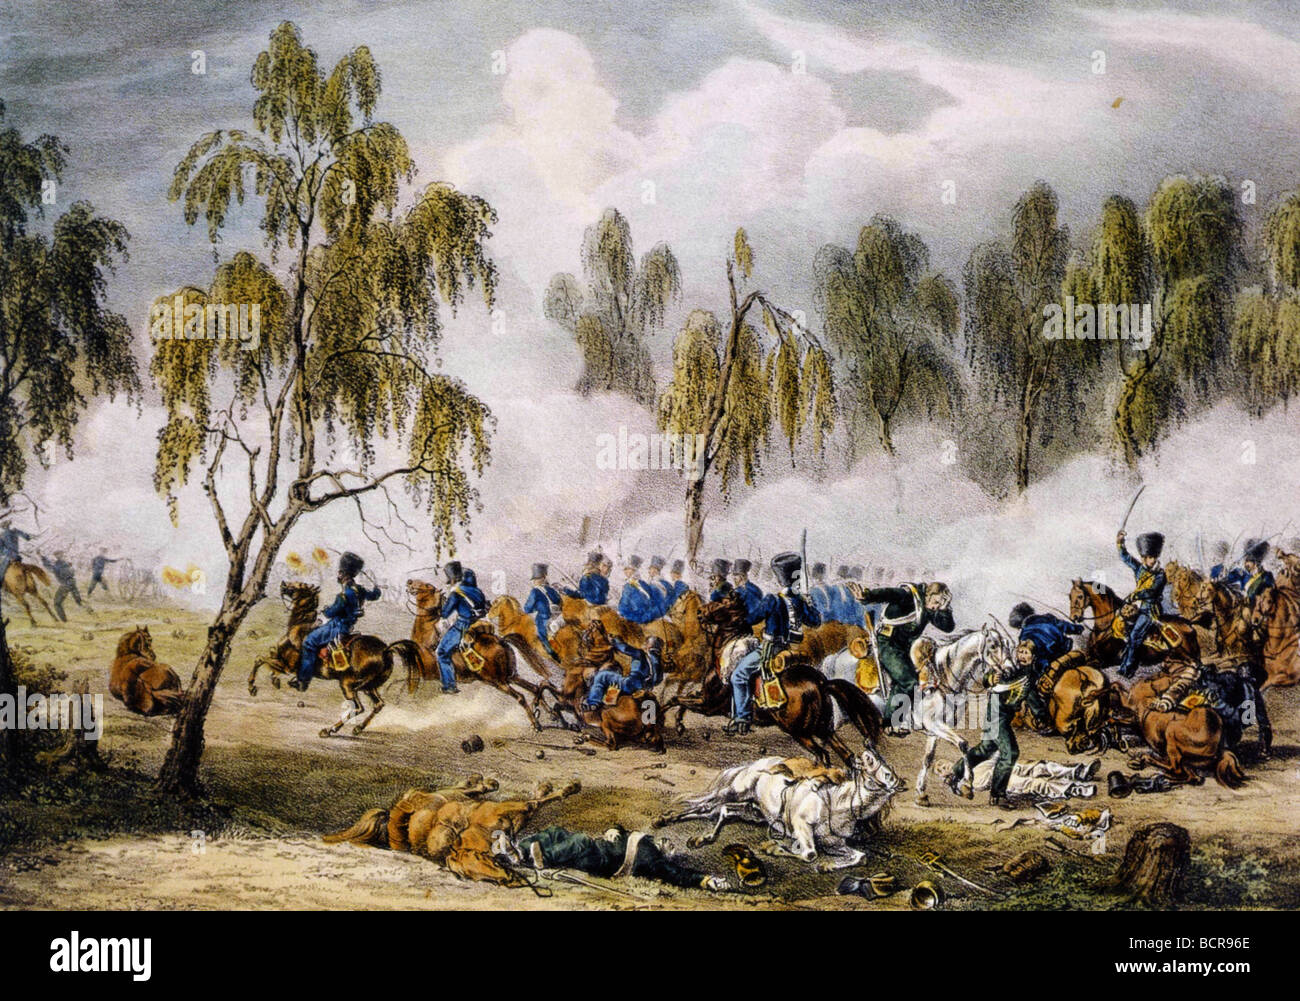 Bataille d'OSTROVNO 25 juillet 1812 pendant l'invasion de Napoléon en Russie comme vu par Albrecht Adam qui a accompagné l'armée française Banque D'Images